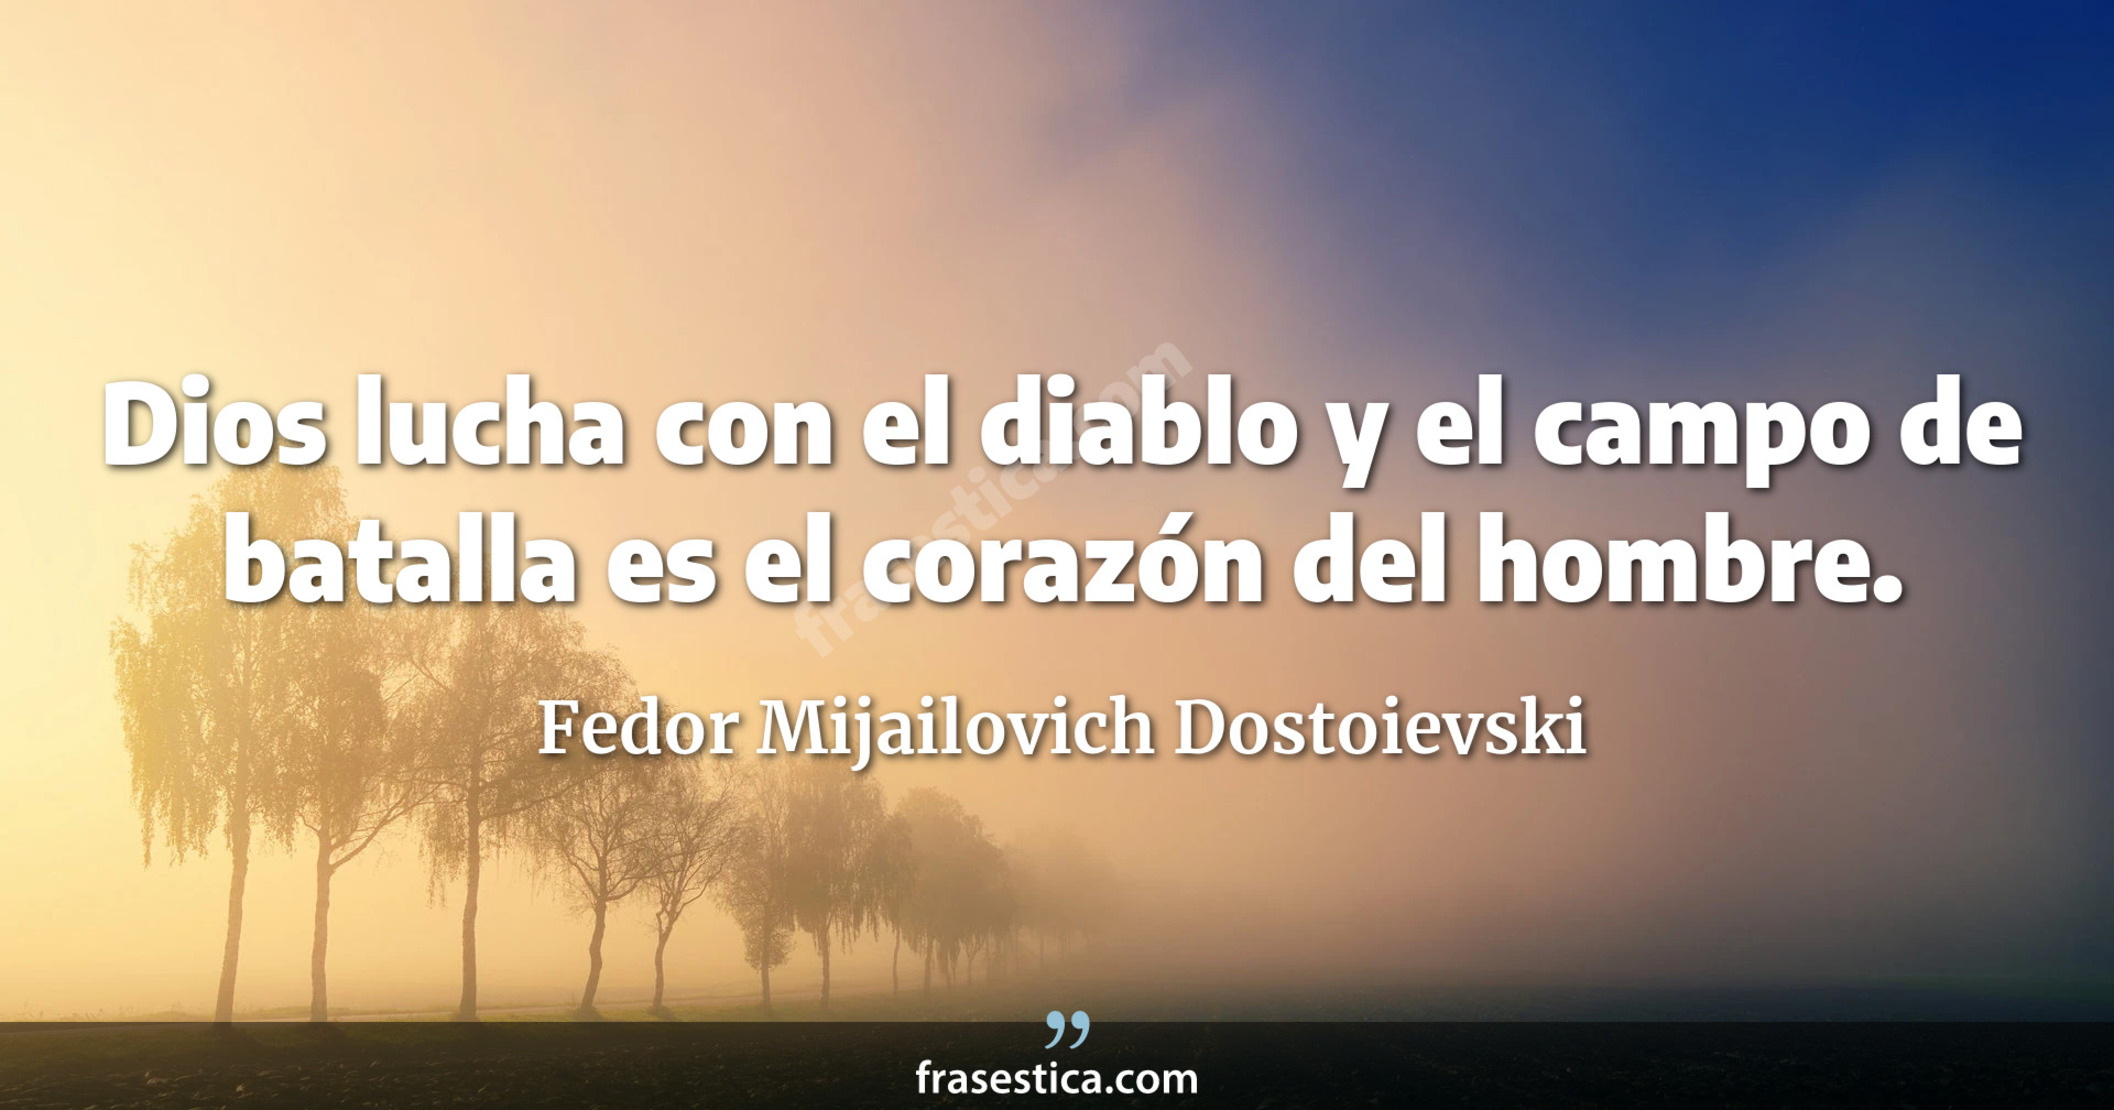 Dios lucha con el diablo y el campo de batalla es el corazón del hombre. - Fedor Mijailovich Dostoievski